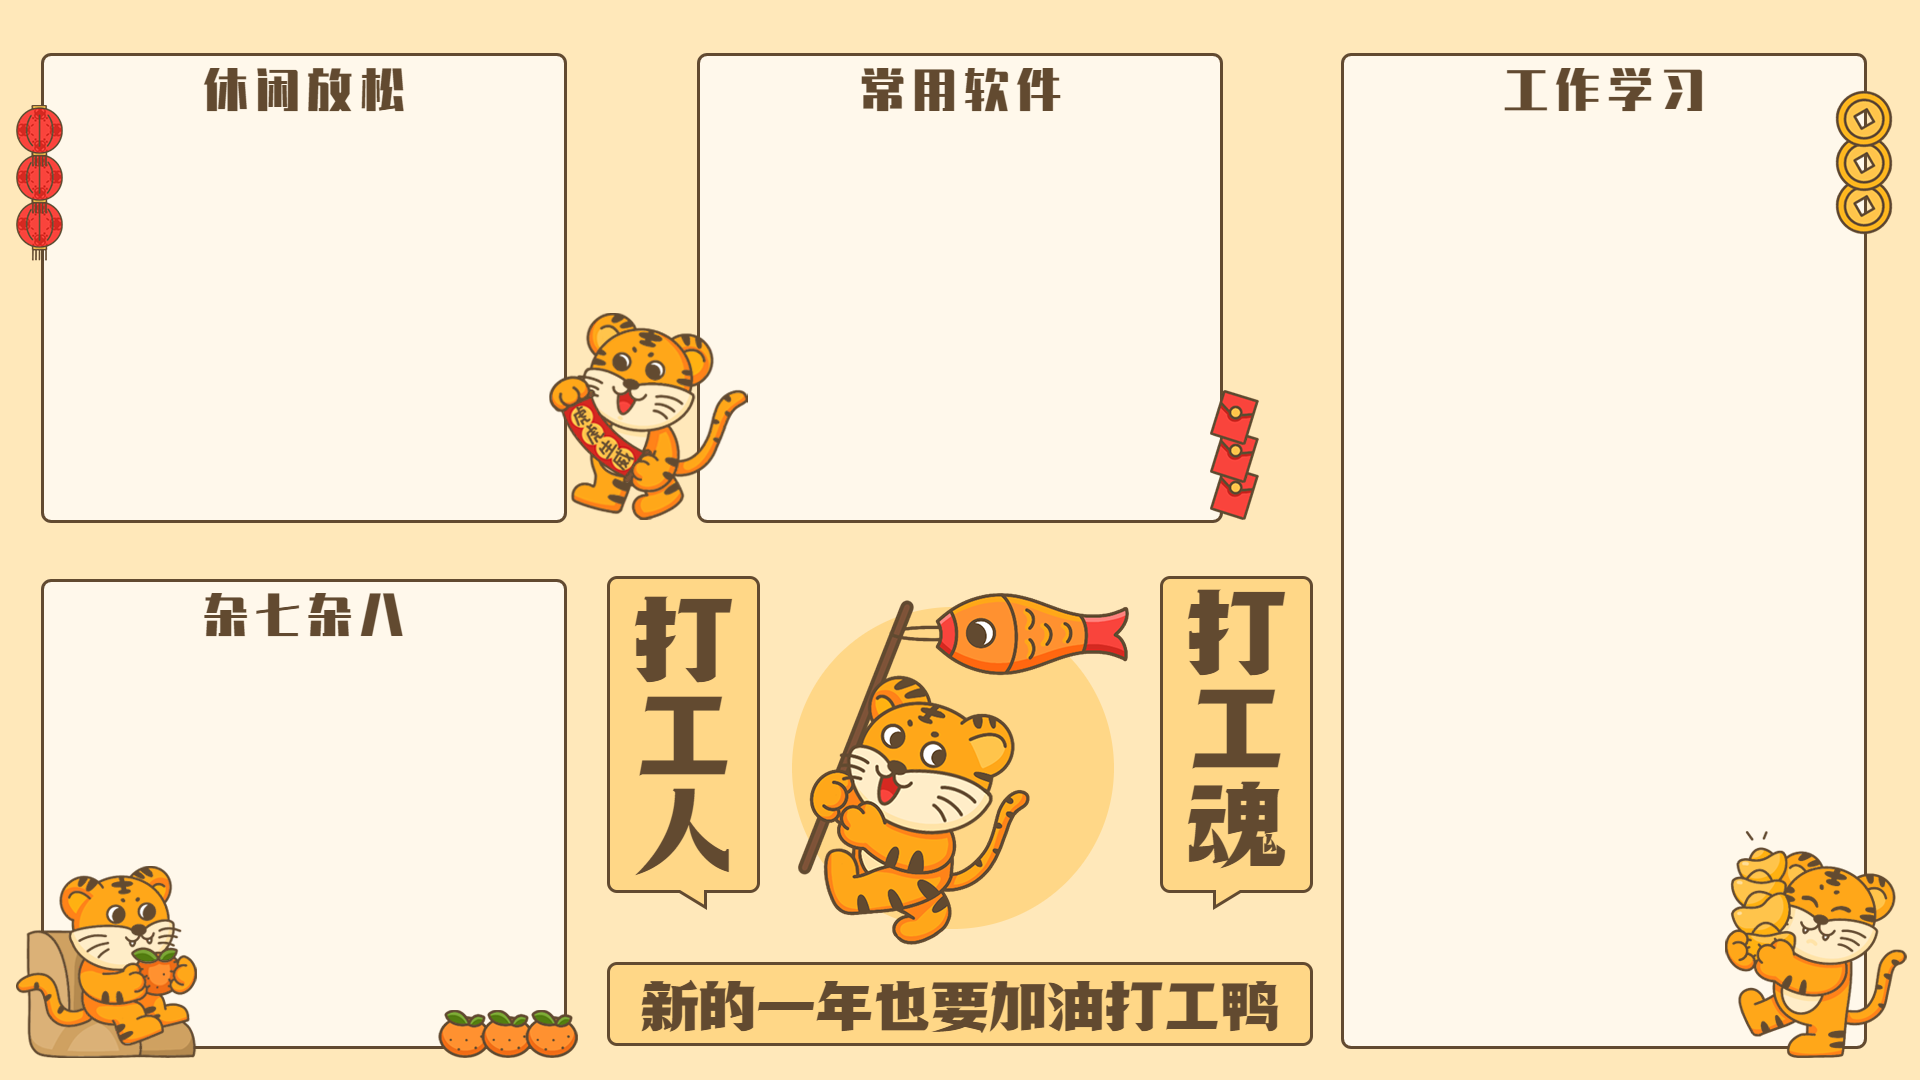 上海装修网：为什么路由器和猫有相似的功能却有着不同的作用？